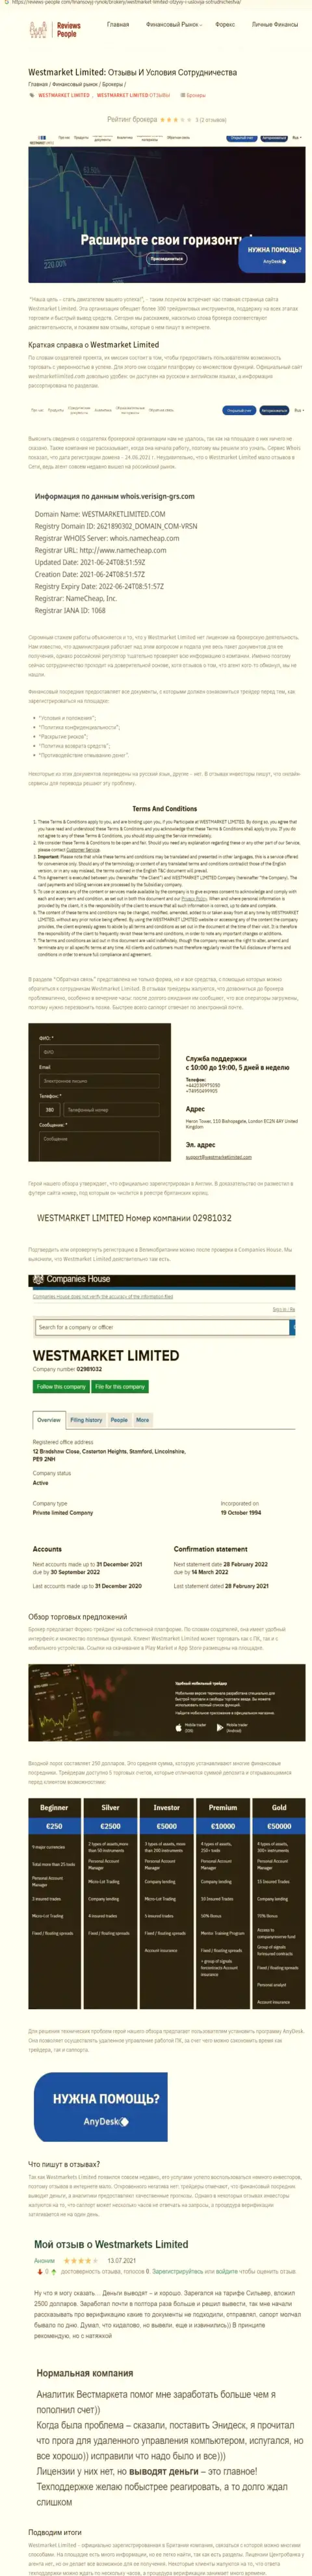 Информация о forex компании WestMarketLimited Com на сайте ревиевс-пеопле ком